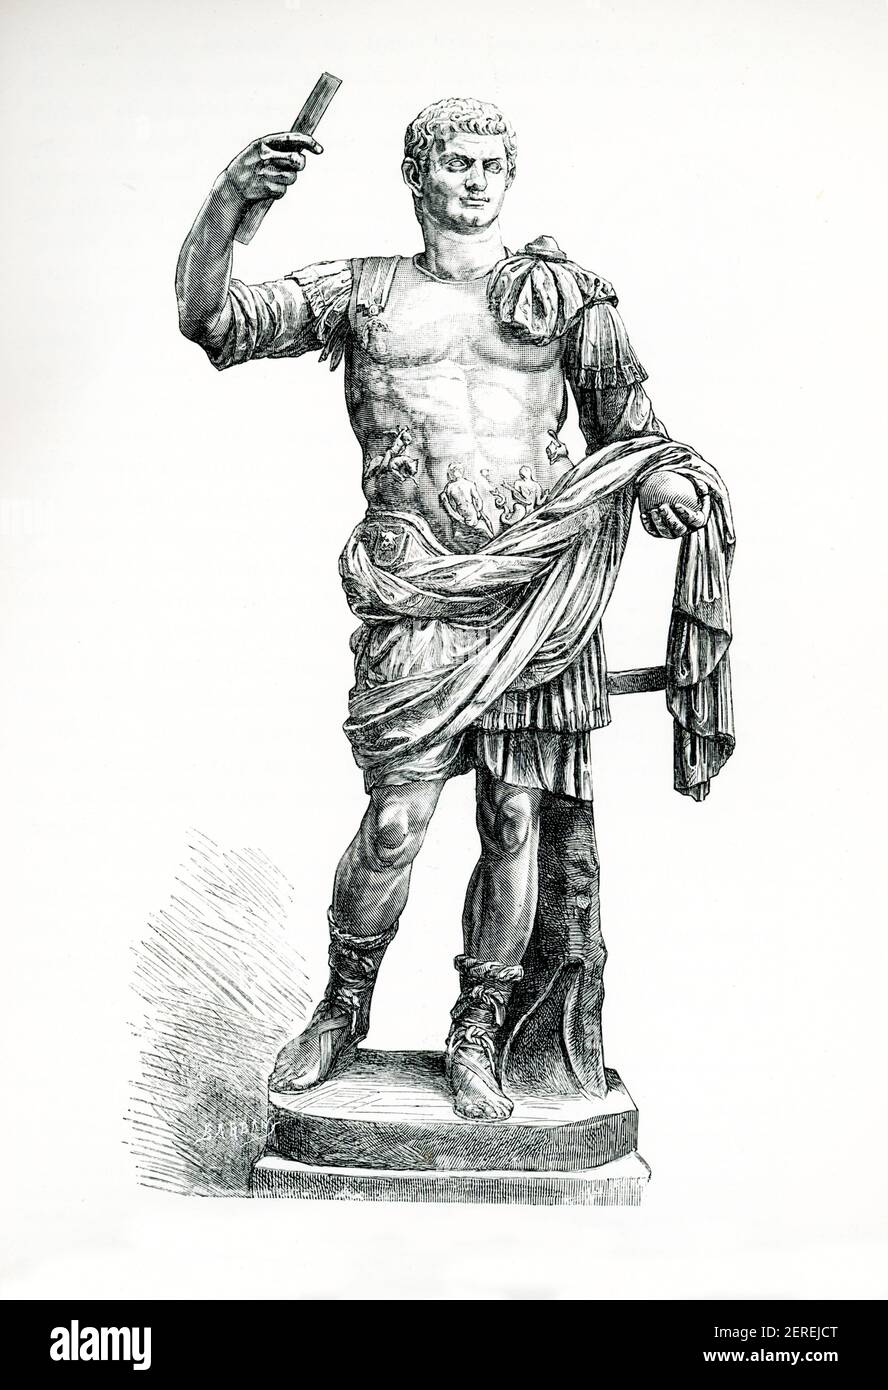 Cette illustration des années 1880 montre la statue de Domitian dans le Vatican Braccio Novo n° 129. Domitian fut empereur romain de 81 à 96. Il était le fils de Vespasien et le frère cadet de Titus, ses deux prédécesseurs sur le trône, et le dernier membre de la dynastie Flavian. Pendant son règne, la nature autoritaire de son règne l'a mis en désaccord avec le Sénat, dont il a considérablement réduit les pouvoirs. Banque D'Images